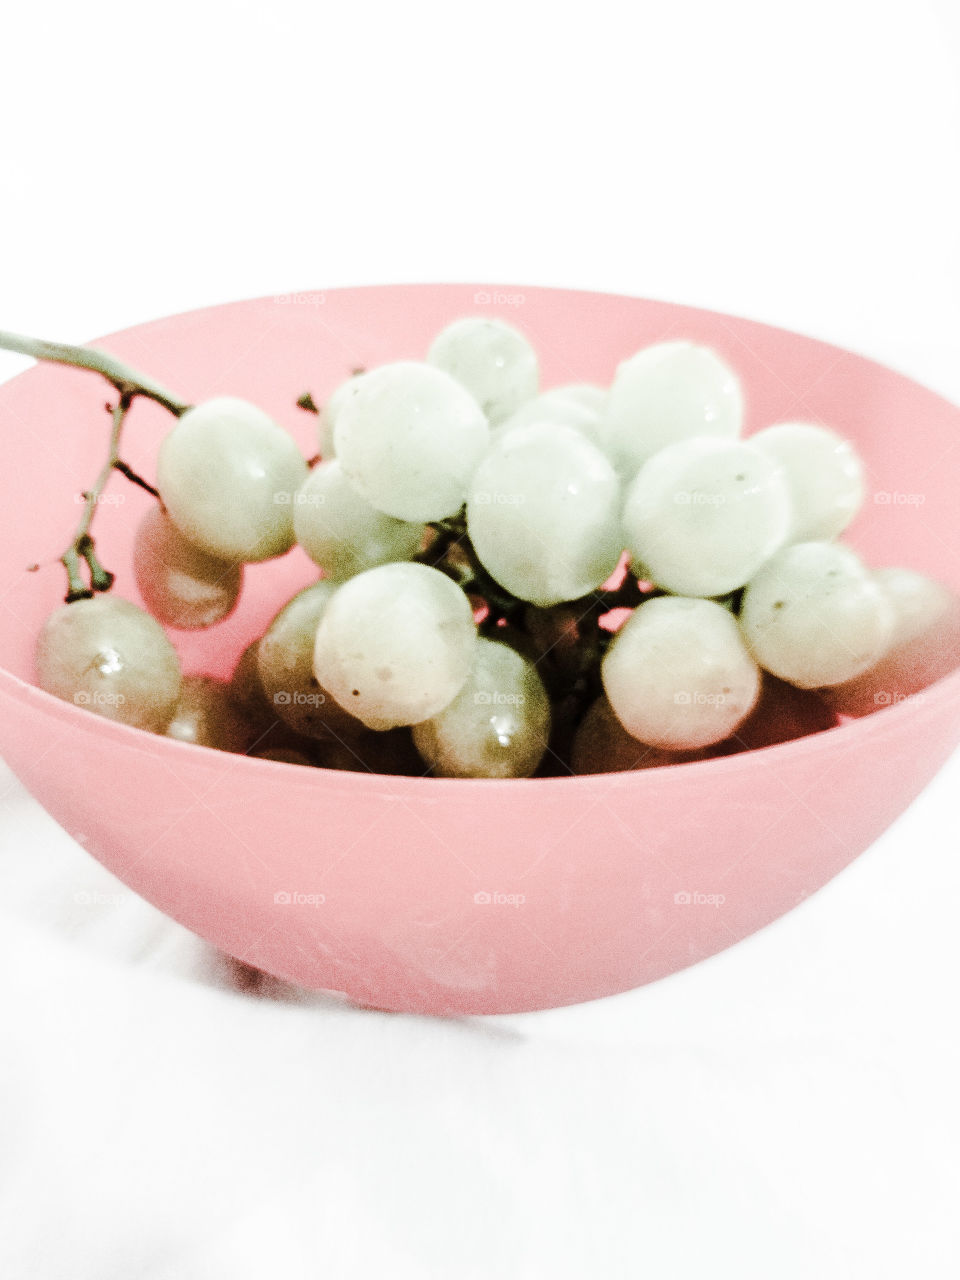 pale grapes